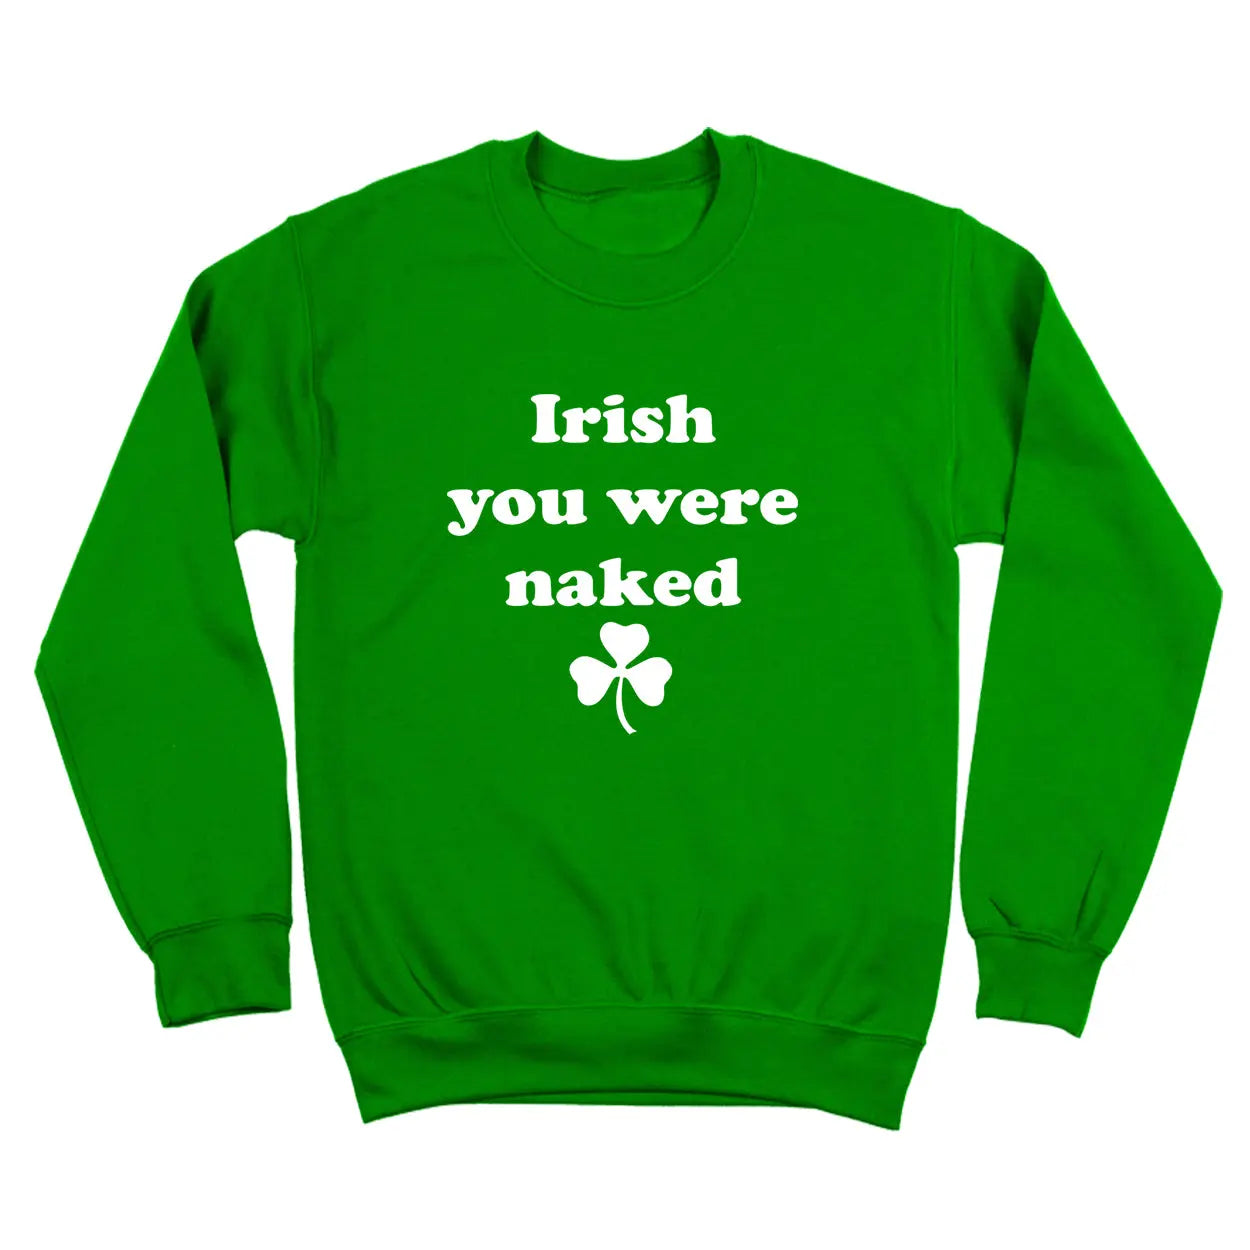 Irish You Were Naked Tshirt - Donkey Tees